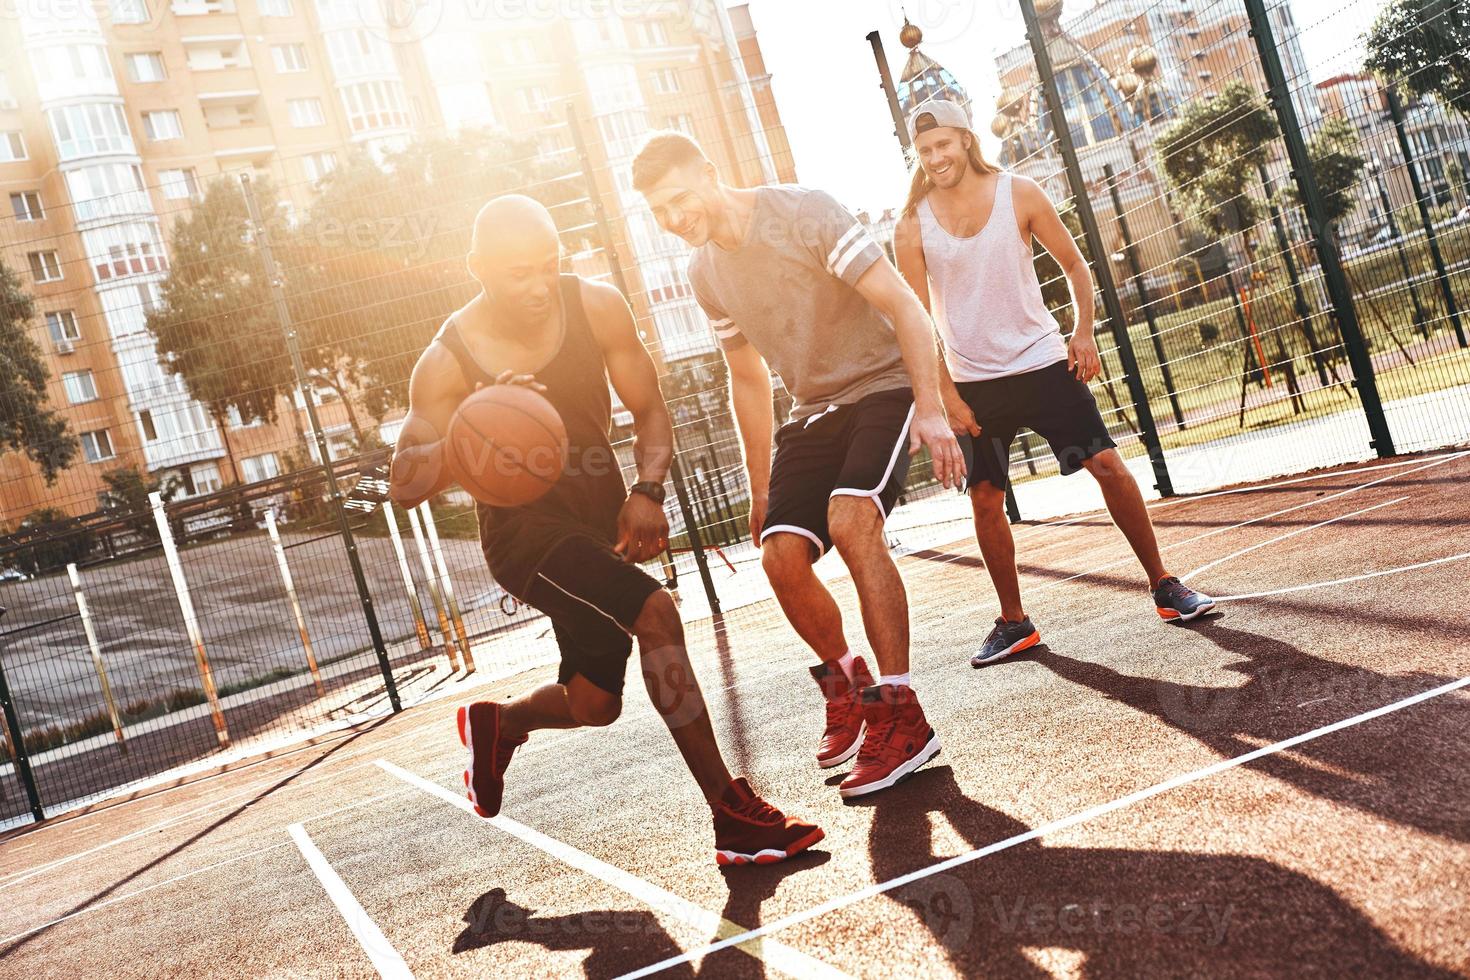 verdadero ganador grupo de jóvenes vestidos con ropa deportiva jugando baloncesto y sonriendo mientras pasan tiempo al aire libre foto